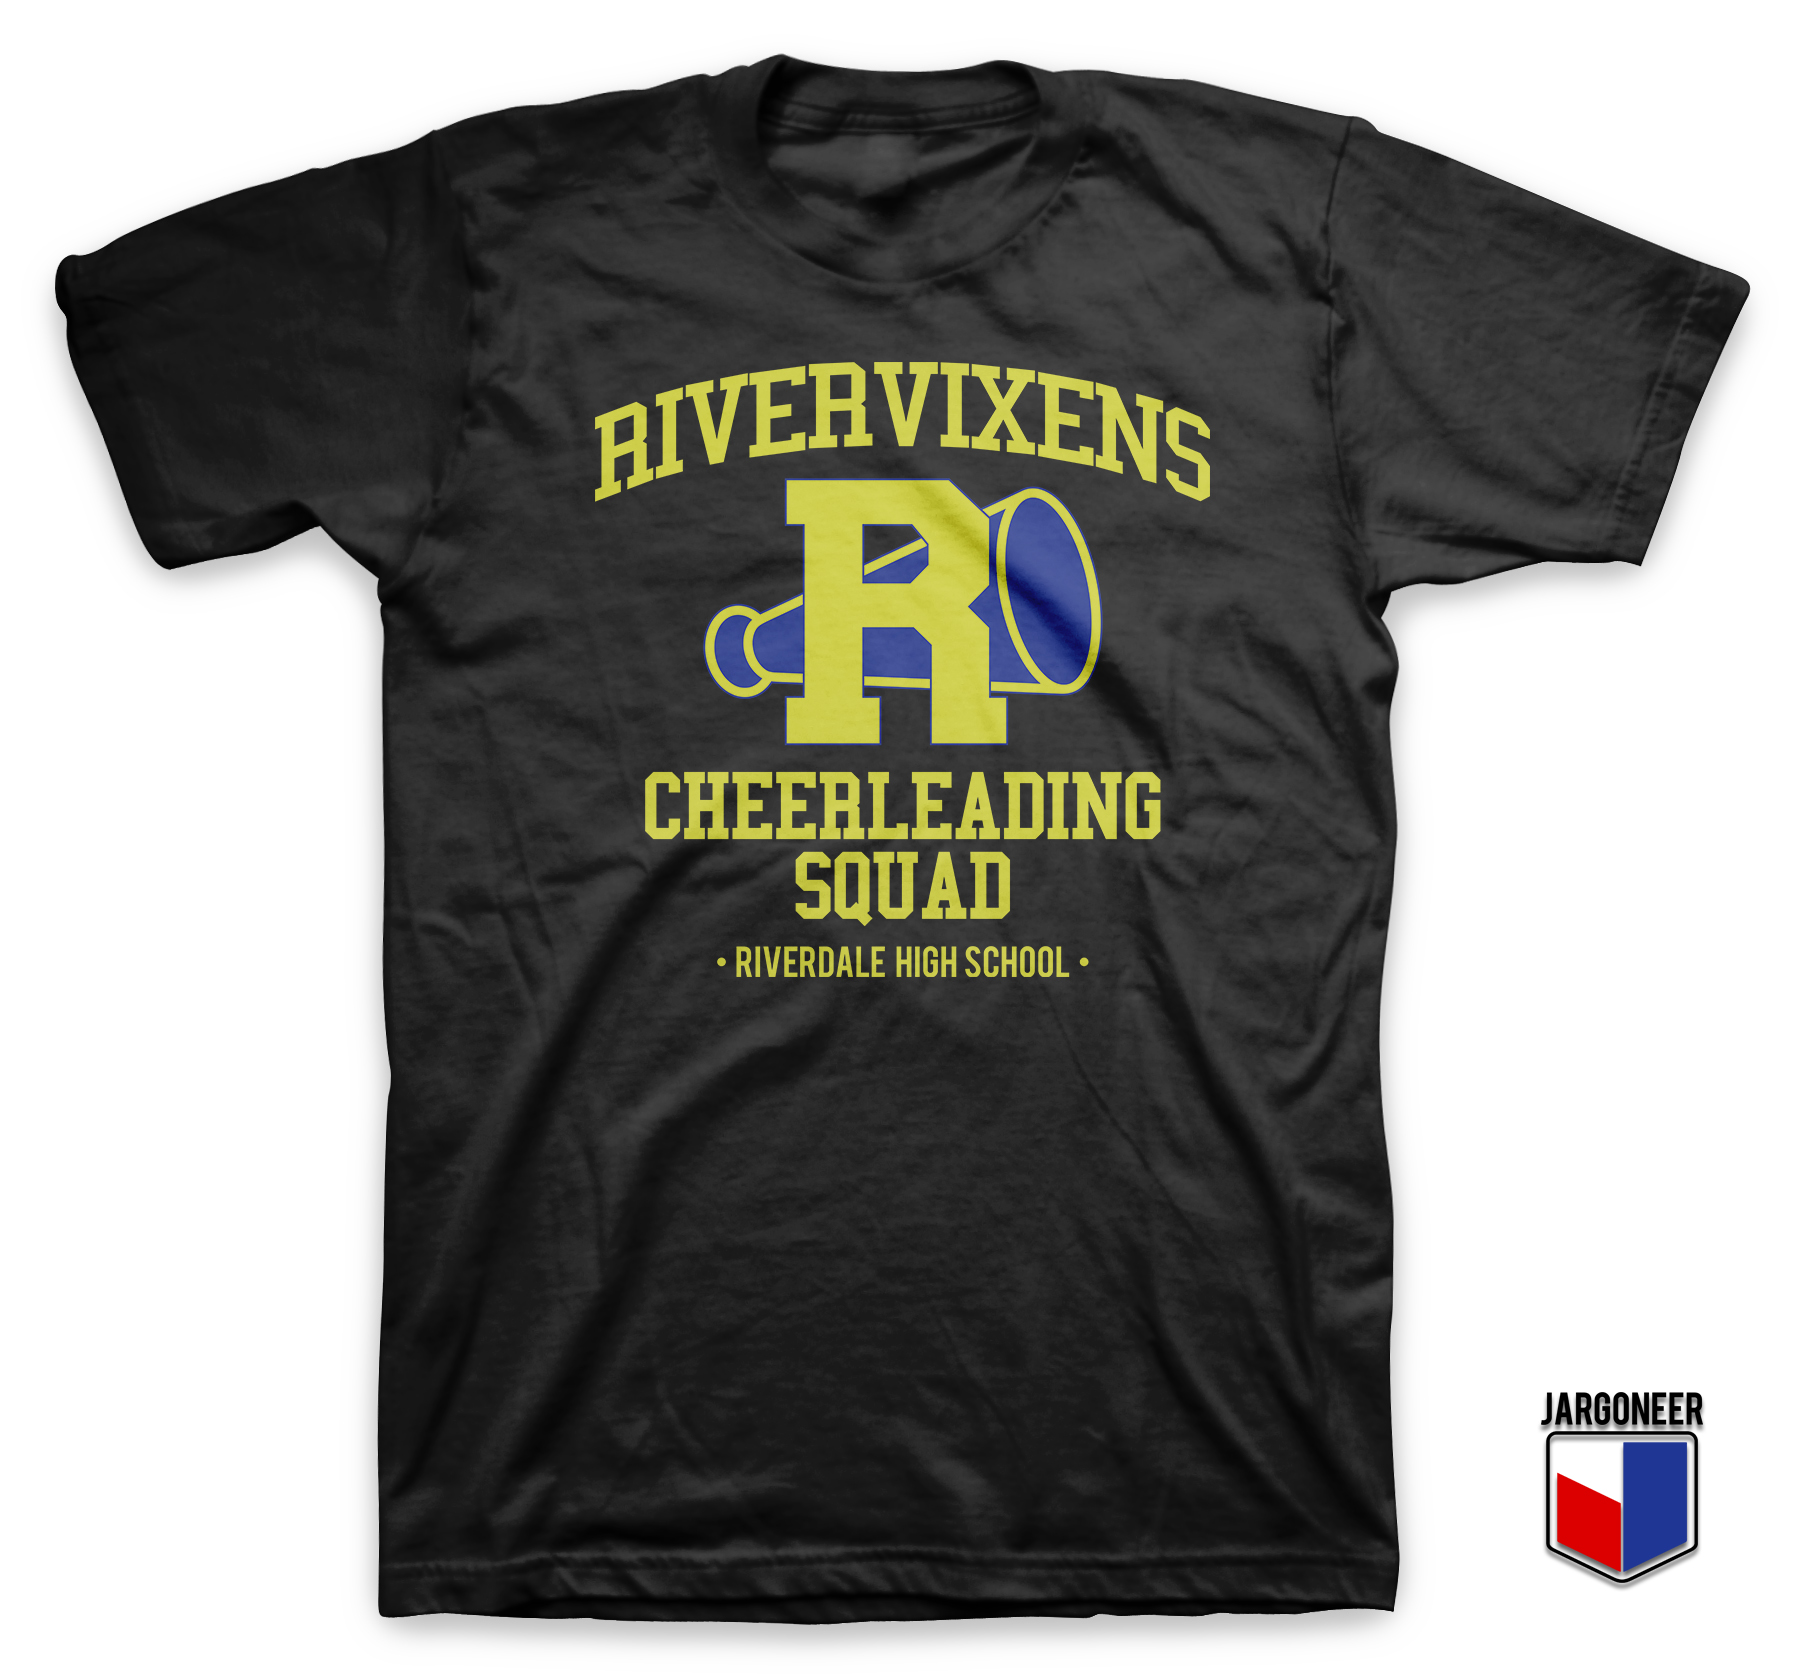 Riverdale Cheerleading Squad Black T Shirt - Shop Unique Graphic Cool Shirt Designs